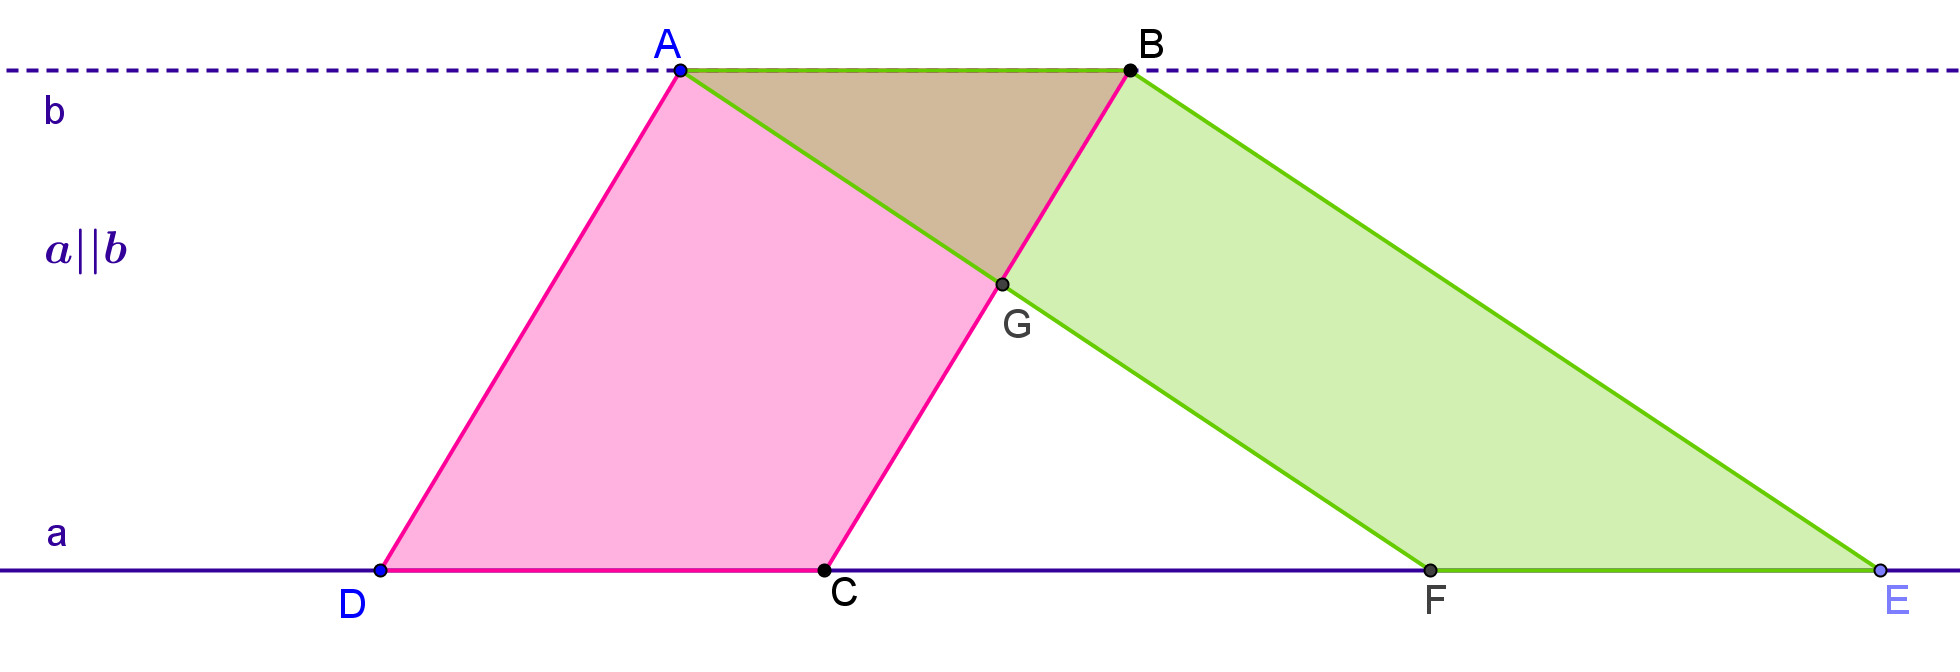 9) Na rysunku przedstawiono dwa równoległoboki ABCD i ABEF. Uzasadnij, że czworokąty CDAG oraz EFGB mają równe pola.